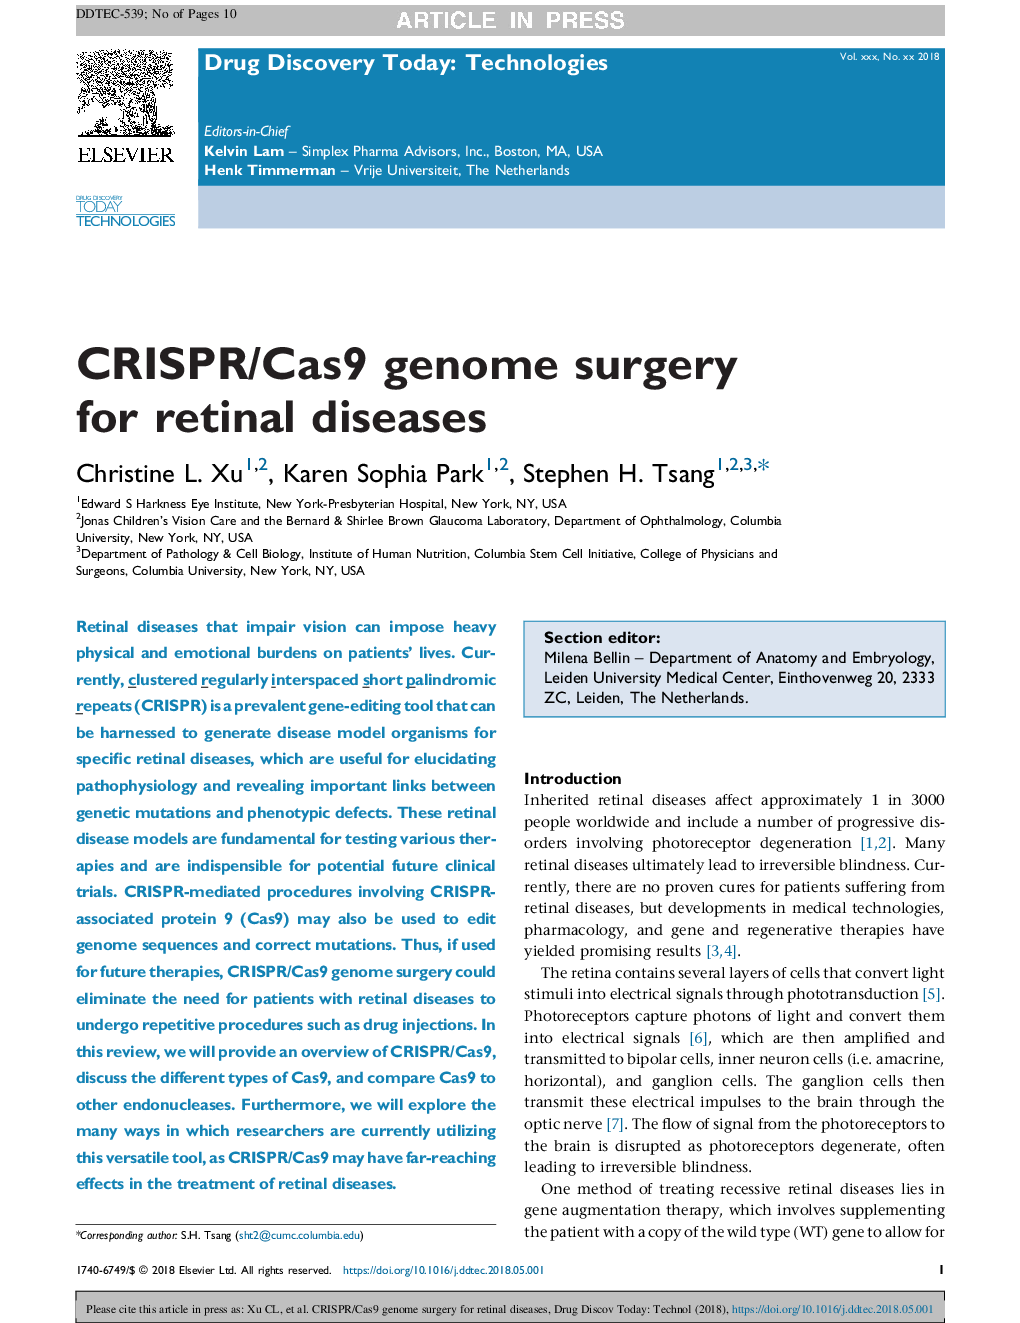 CRISPR/Cas9 genome surgery for retinal diseases